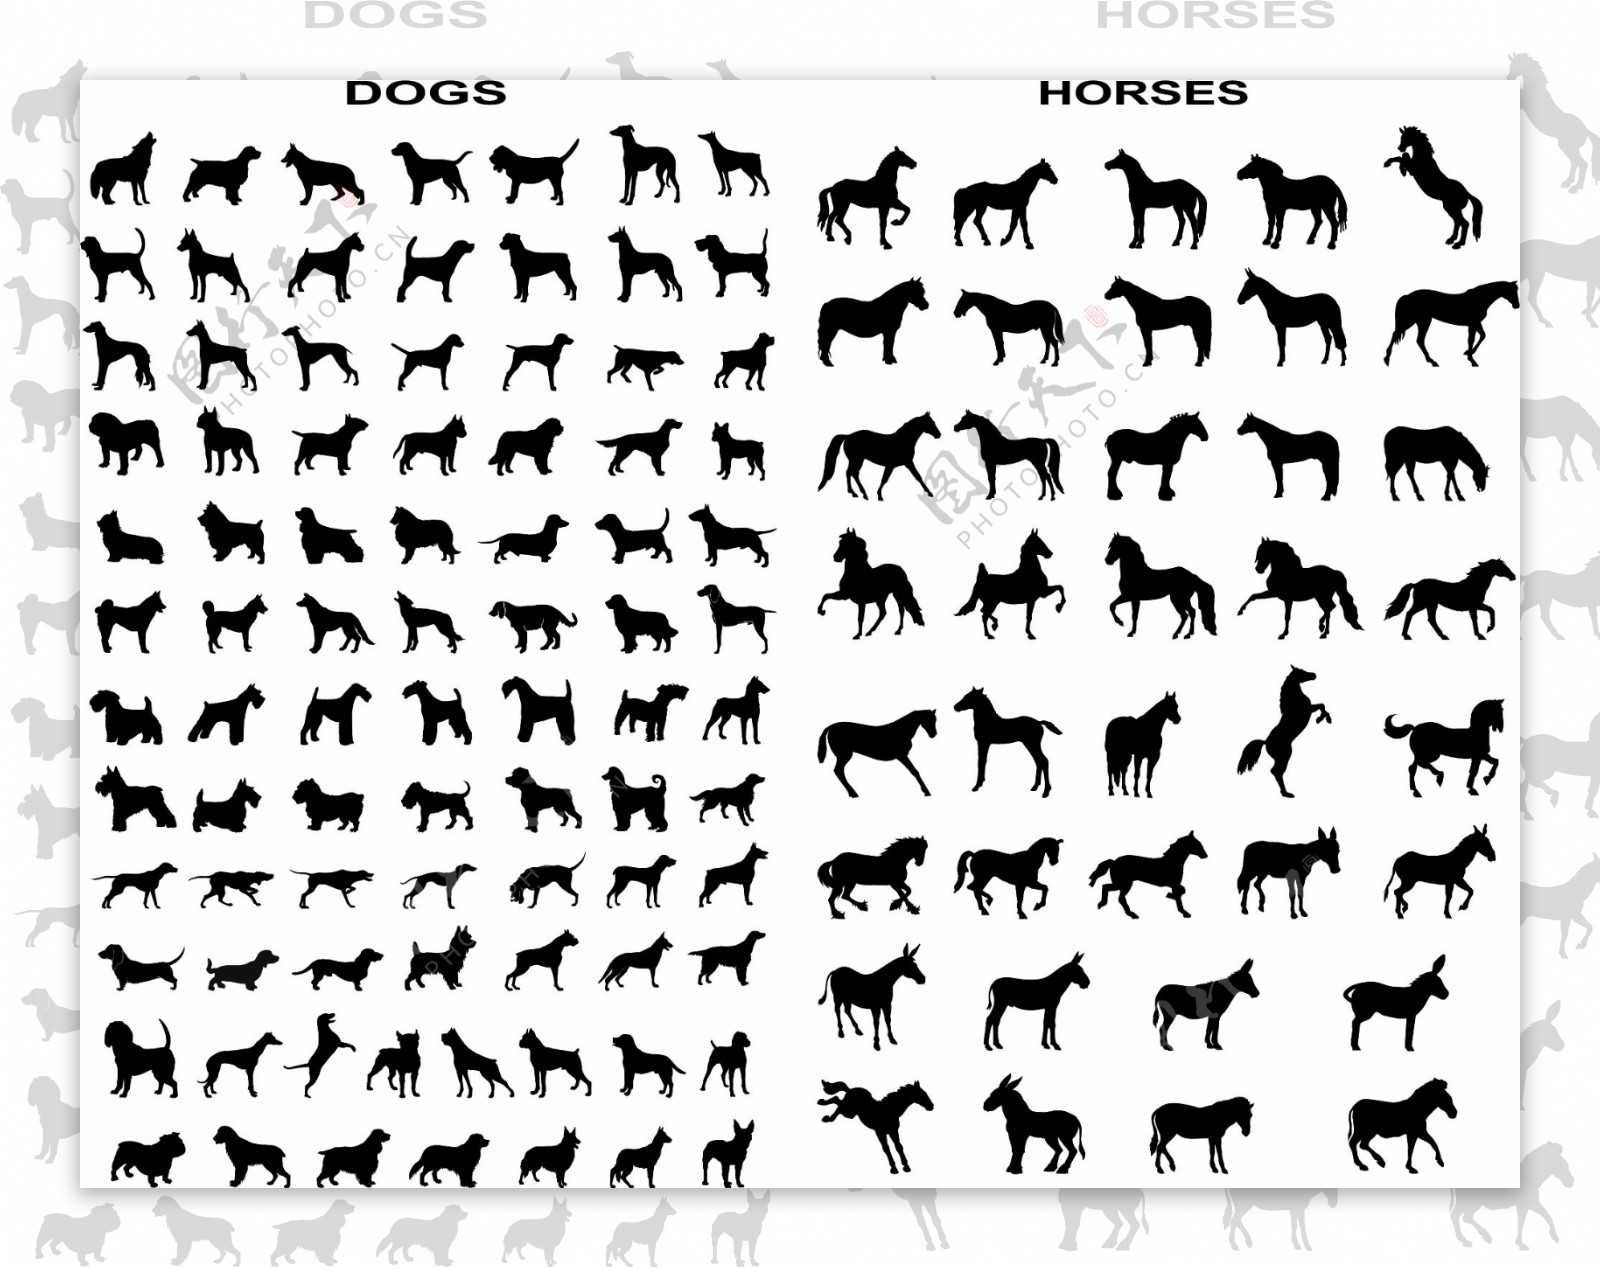 各种各样的马和狗剪影矢量素材运动